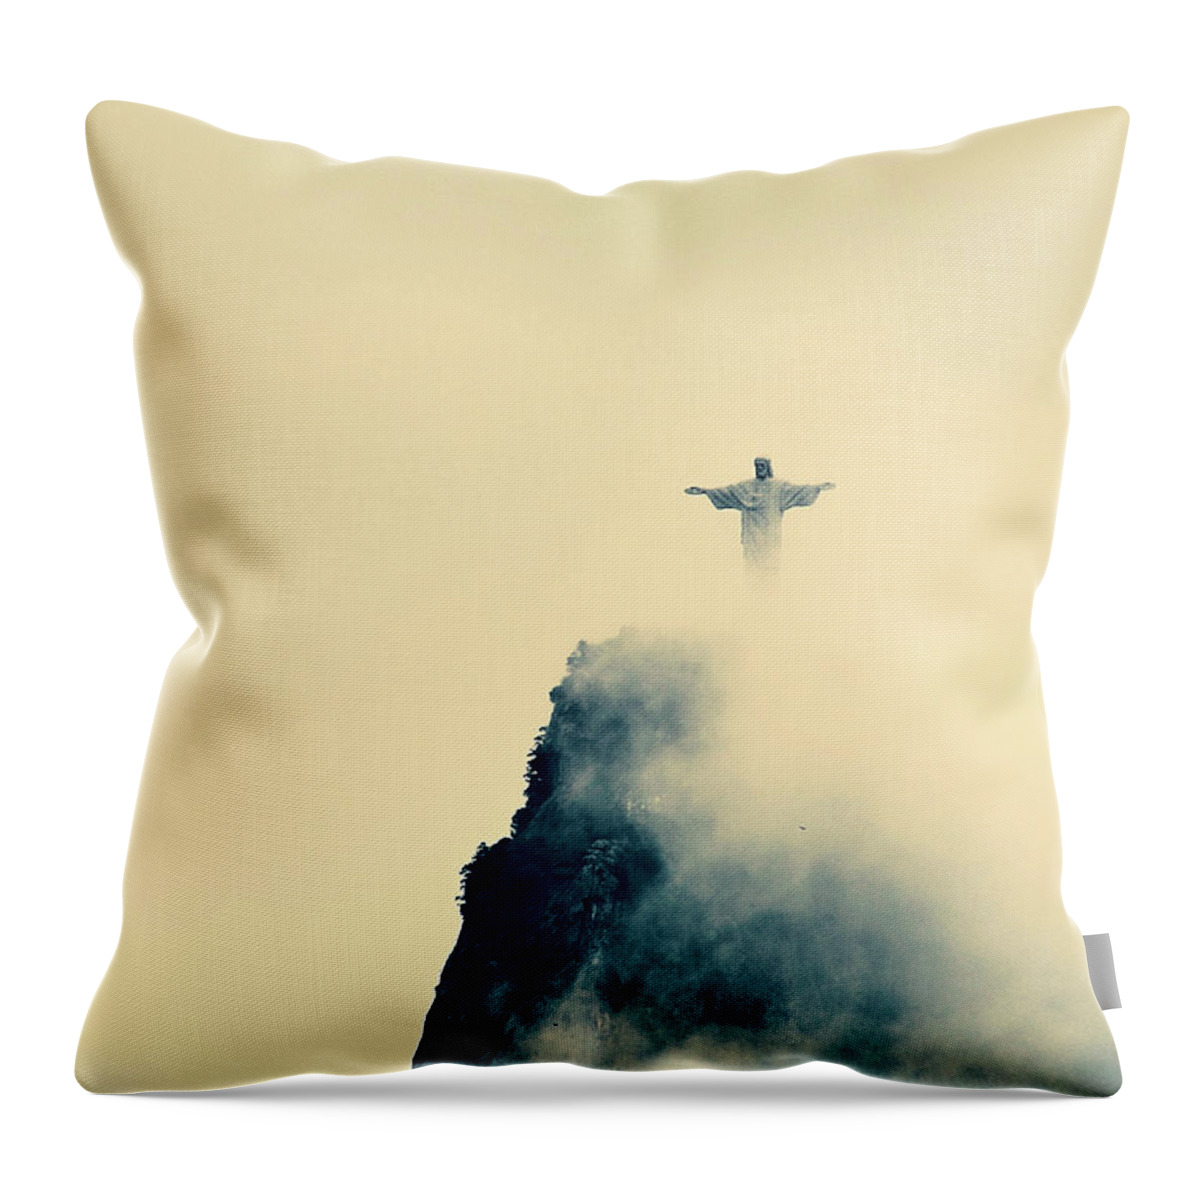 Mountain Throw Pillow featuring the photograph Cristo Redentor #8 by Cesar Vieira